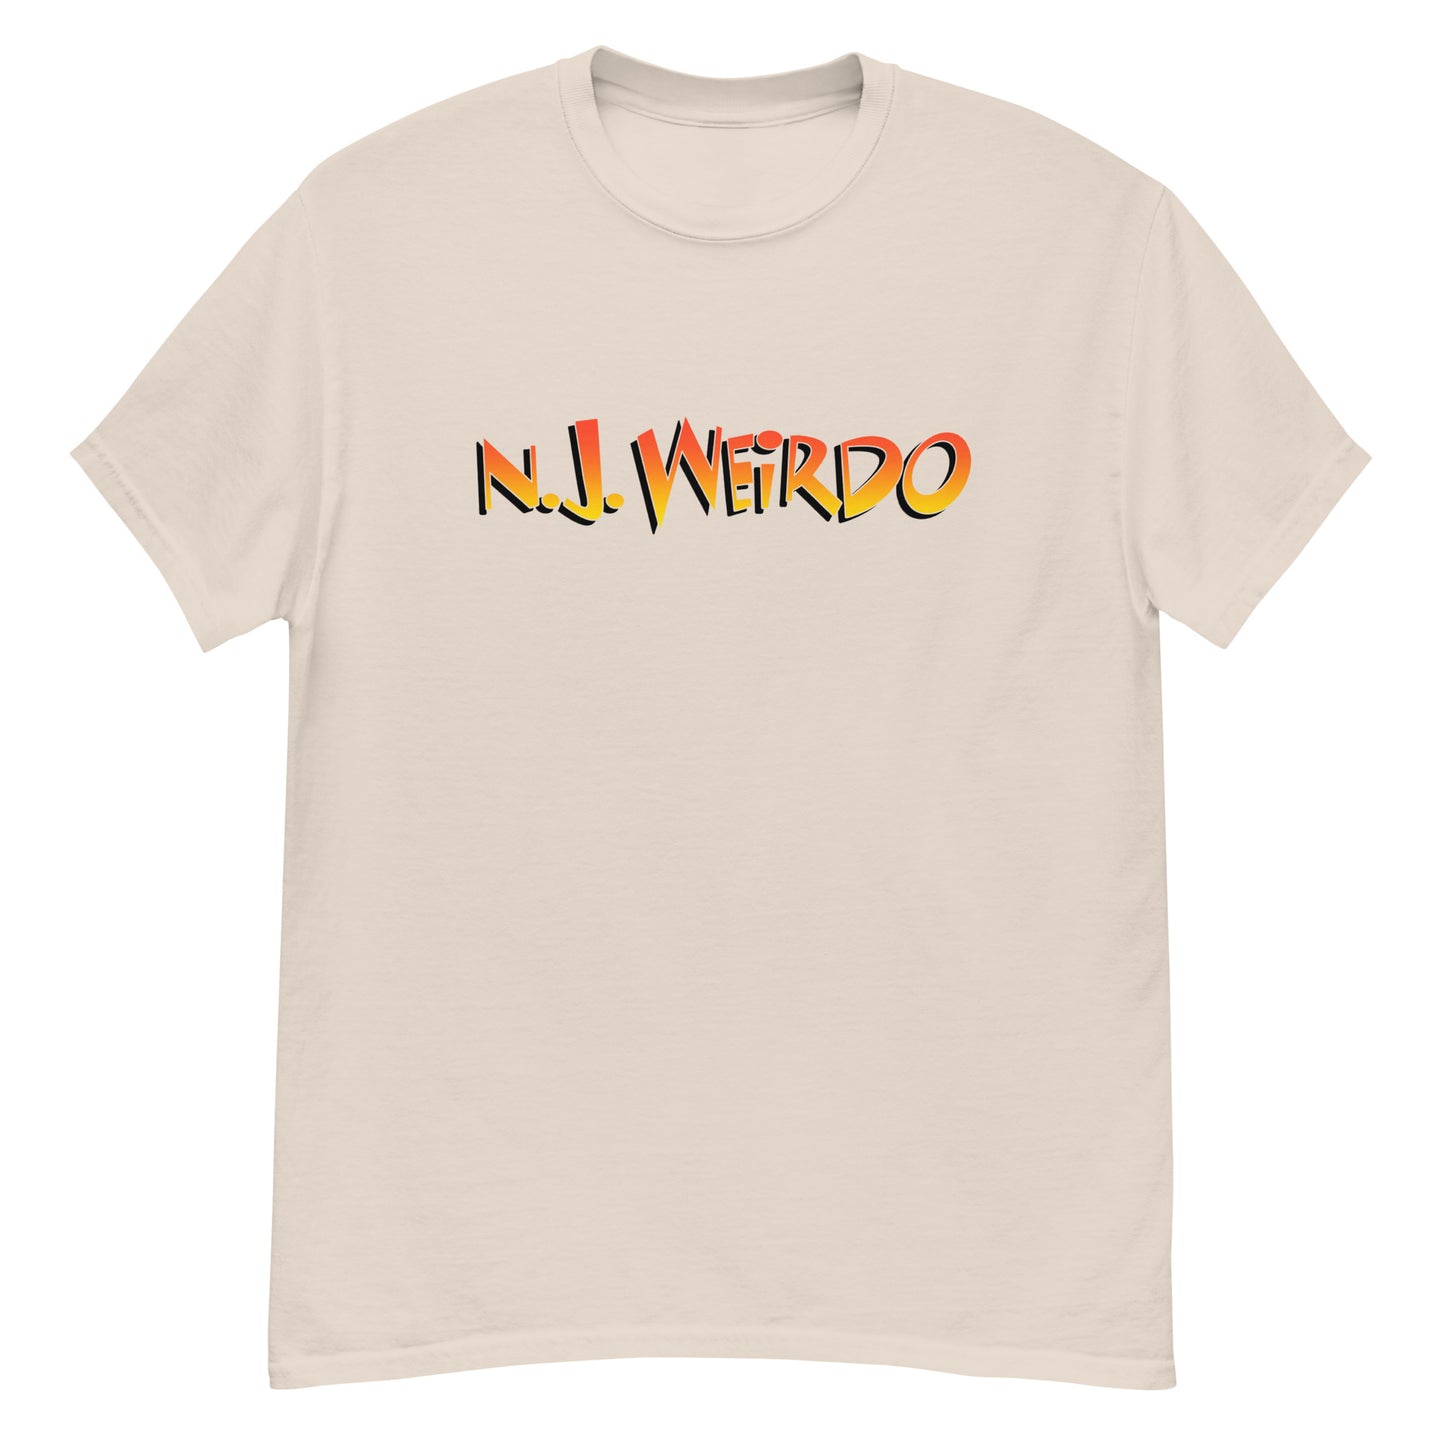 NJ Weirdo t-shirt